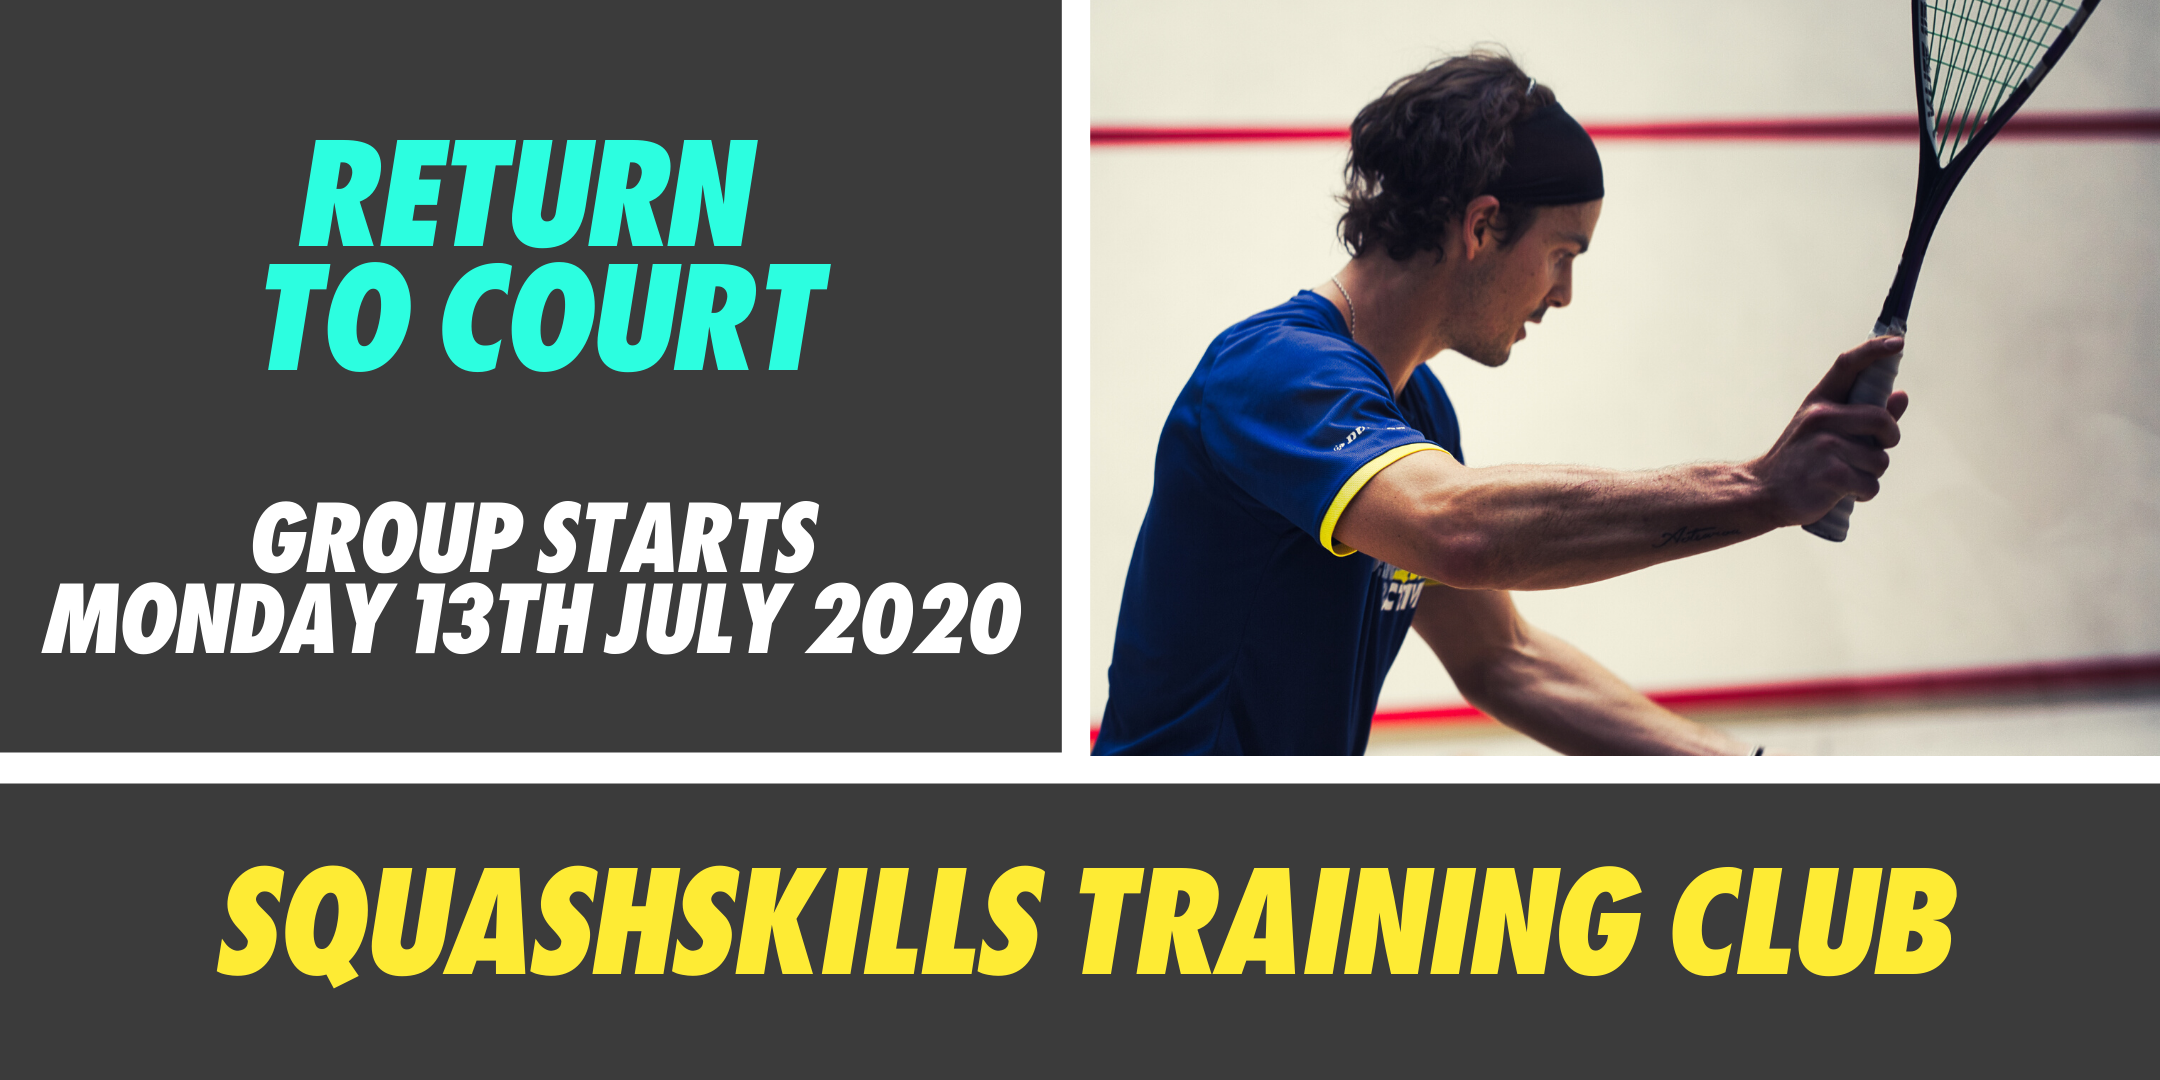 SquashSkills Training Club - Return To Court